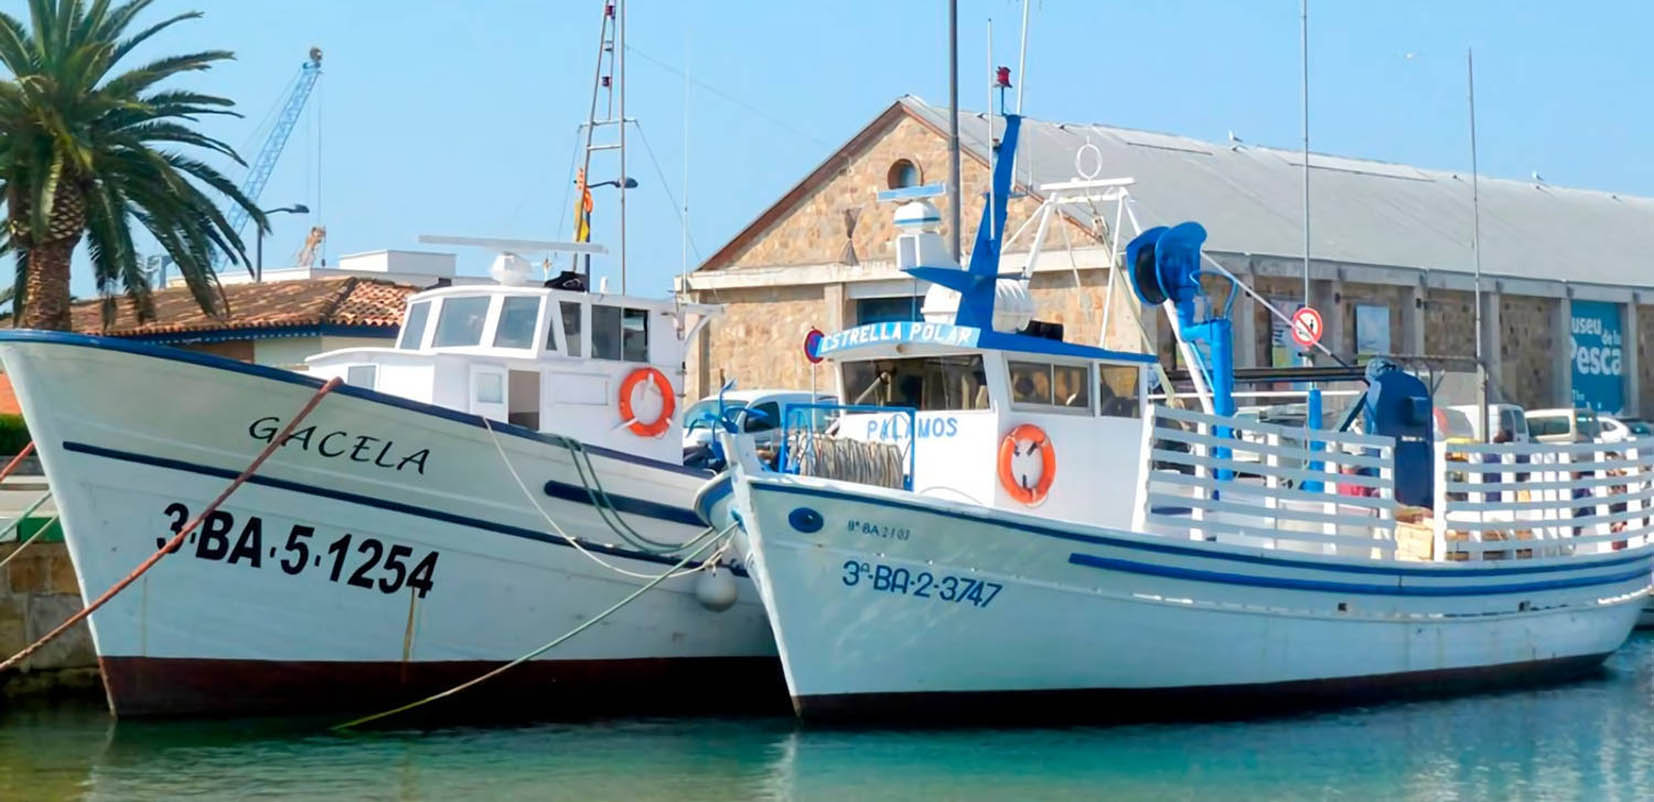 Palamós cuenta con los únicos museos flotantes visitables del Mediterráneo dedicados a las embarcaciones pesqueras tradicionales.